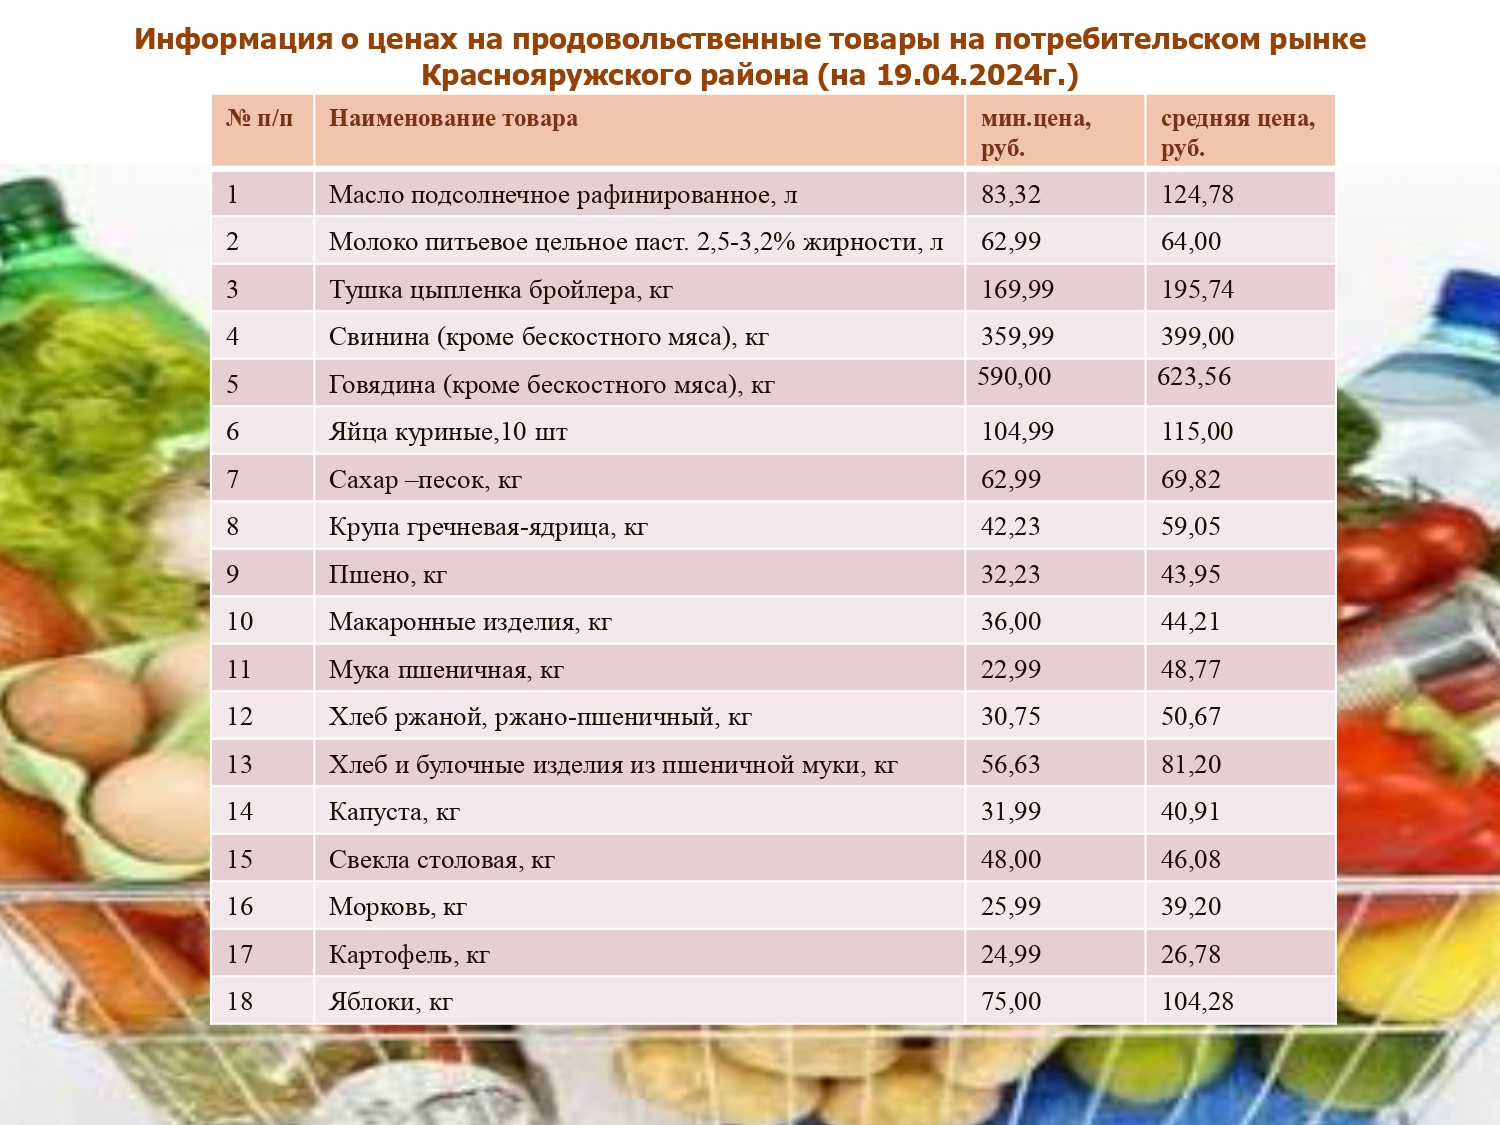 Информация о ценах на продовольственные товары, на потребительском рынке Краснояружского района по состоянию на 19.04.2024г..